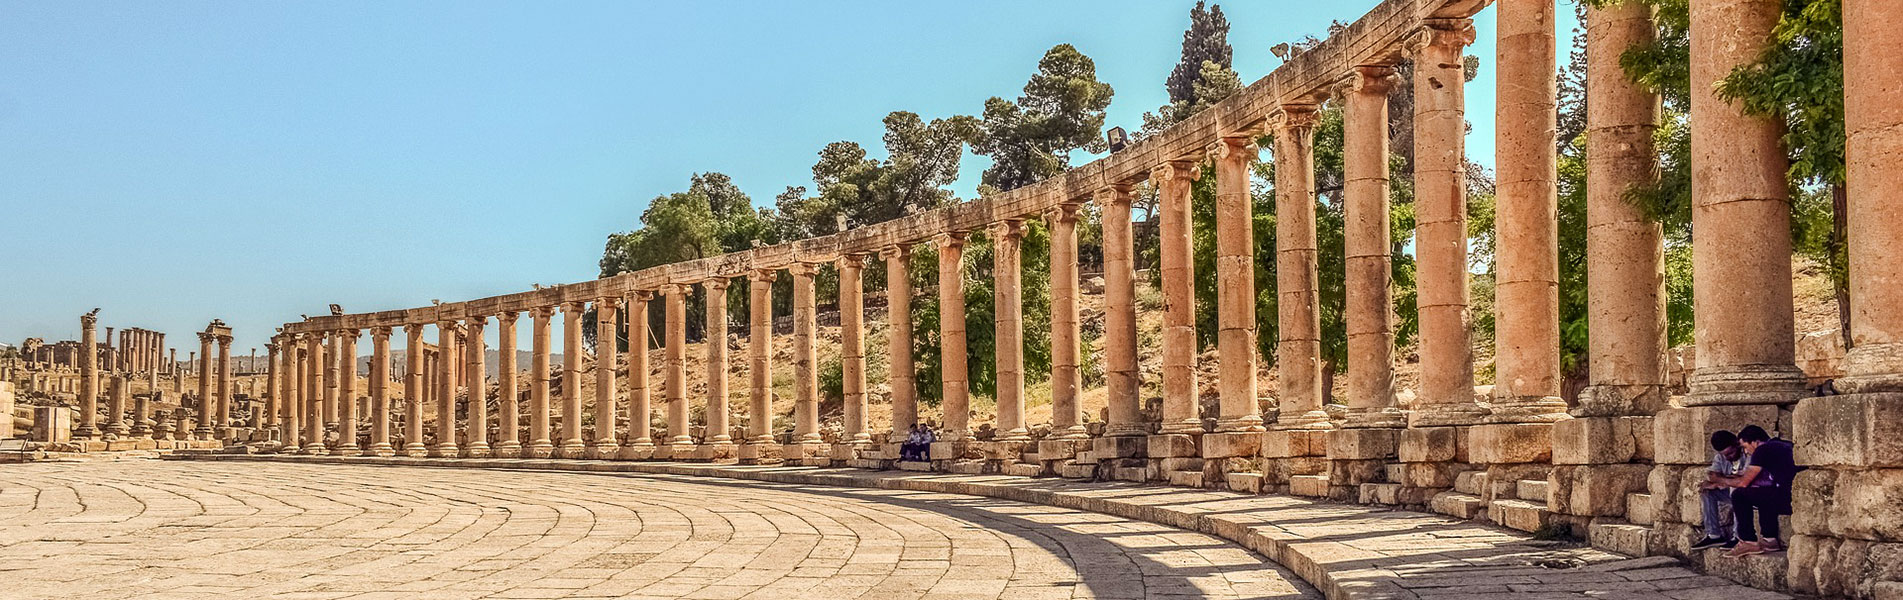 Jordan Ancient Architecture